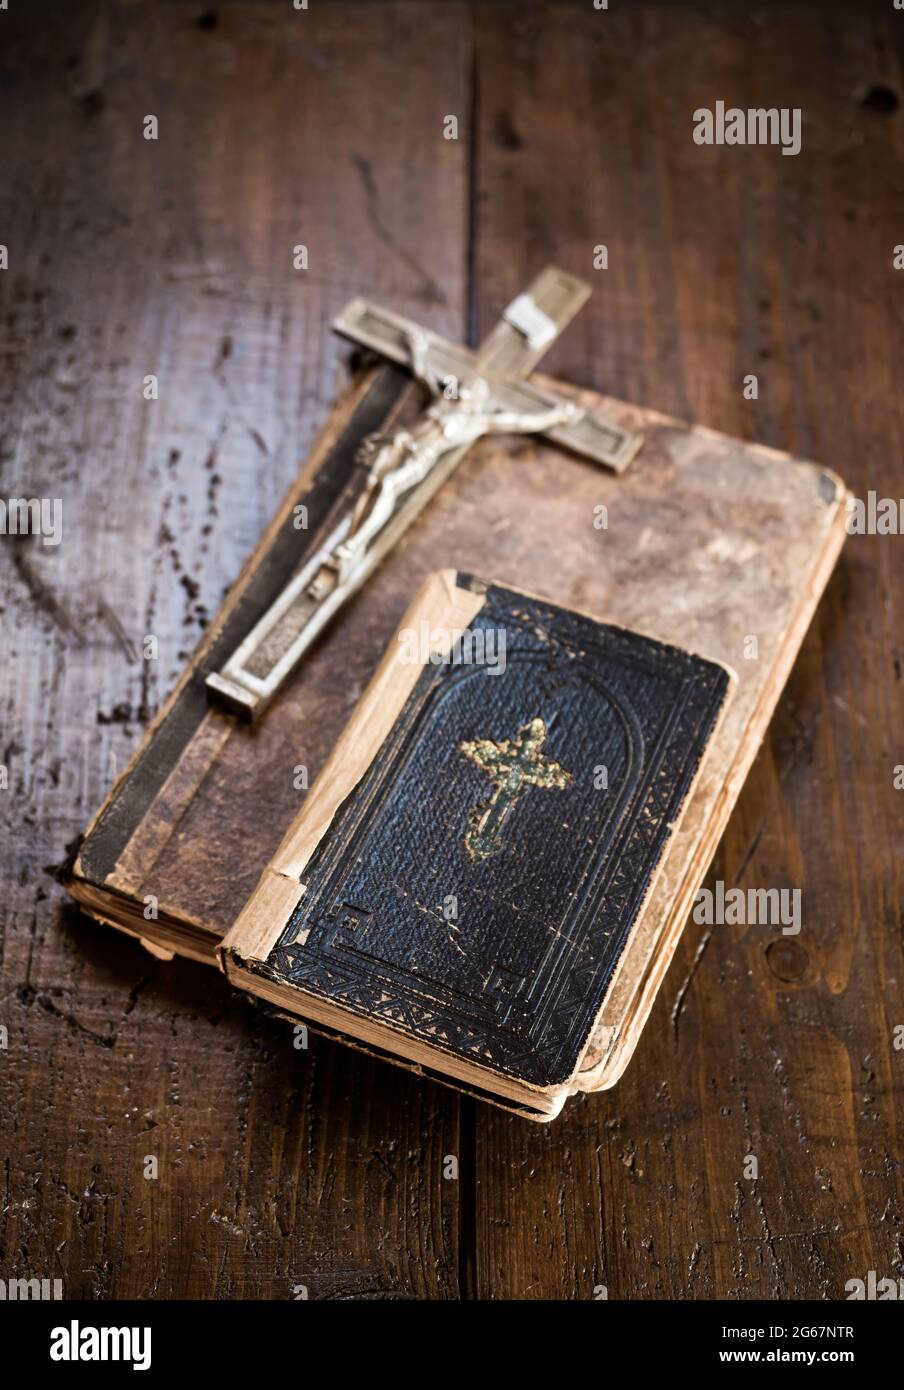 Crocifisso e Sacra Bibbia che si stendono su un vecchio libro su una tavola rustica di legno. Cristianesimo, religione, simbolo religioso. Preghiera. Foto Stock